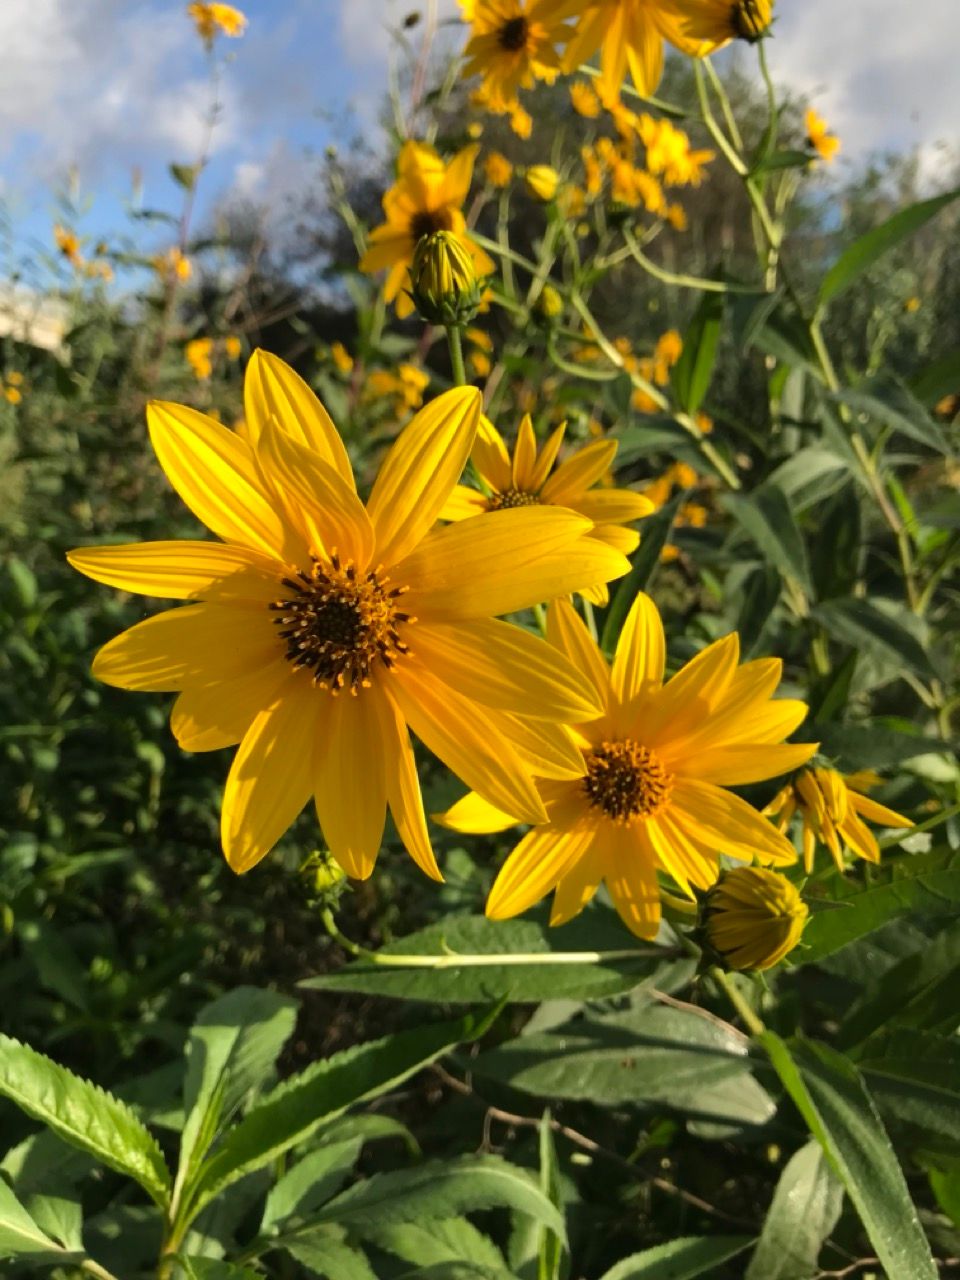 Lecciones de vida de una flor amarilla